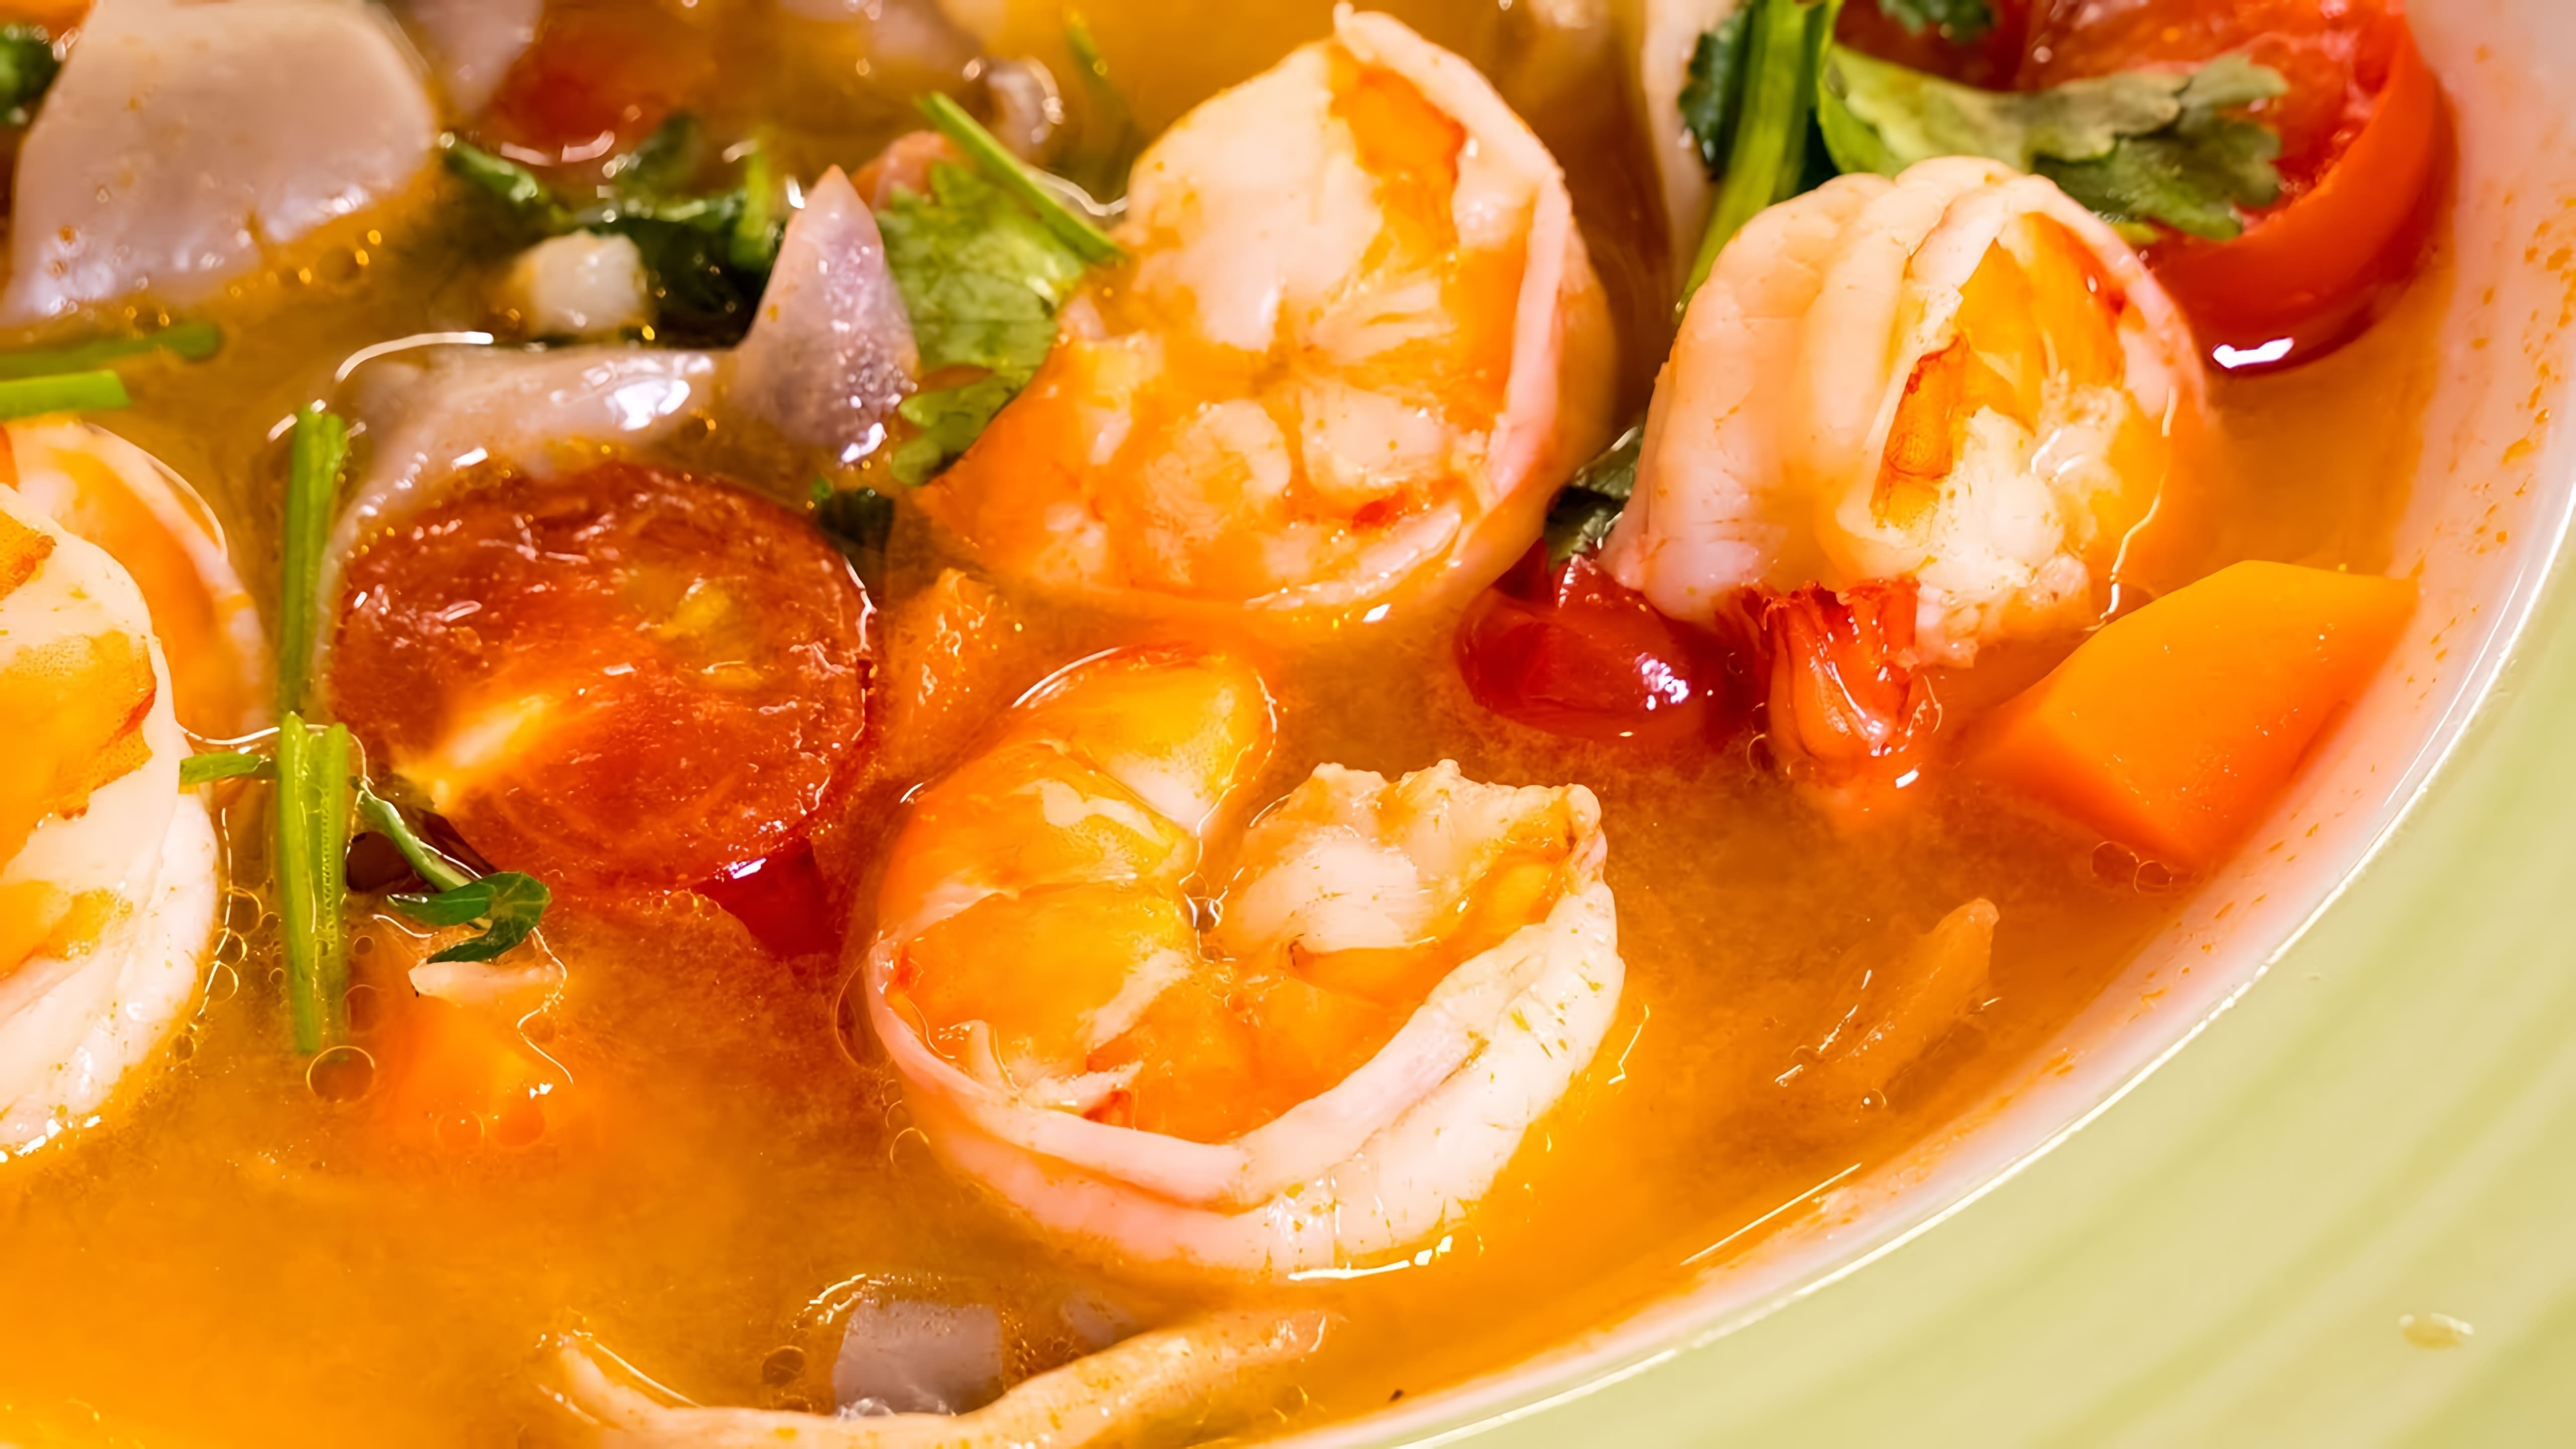 В этом видео автор рассказывает о приготовлении тайского супа "Том Ям" с креветками